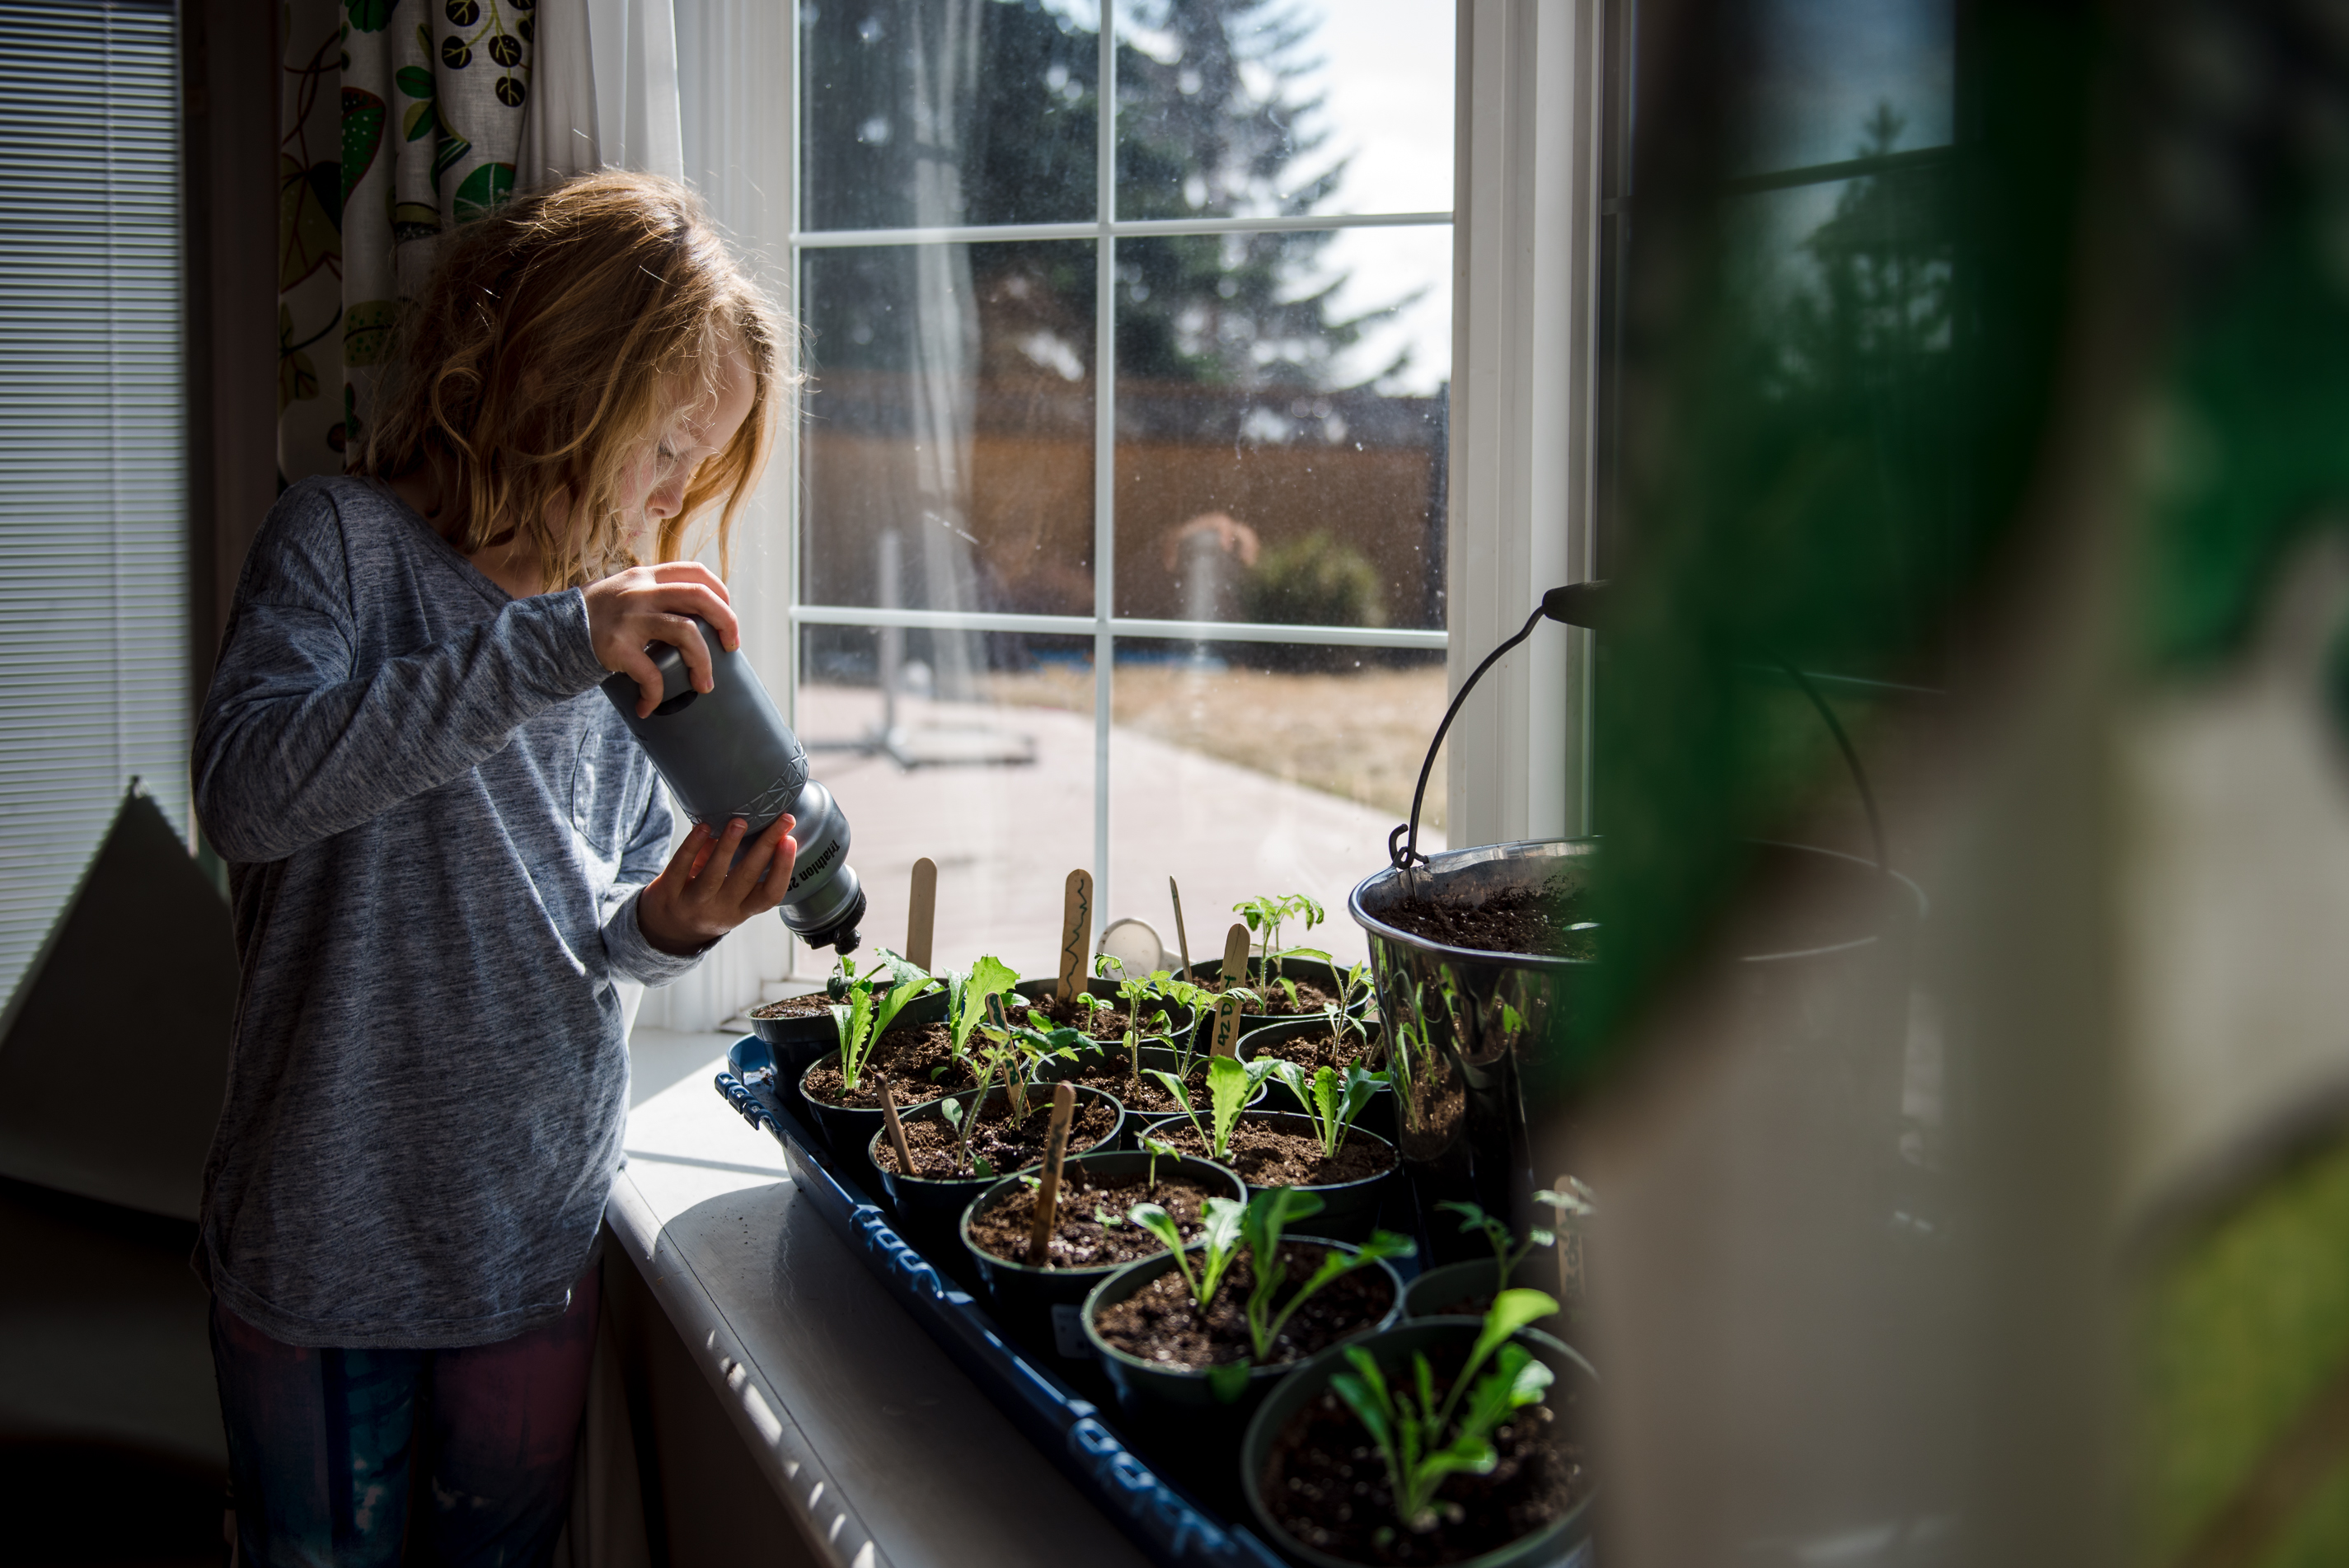 A young girl waters seedlings in Edmonton, Alberta